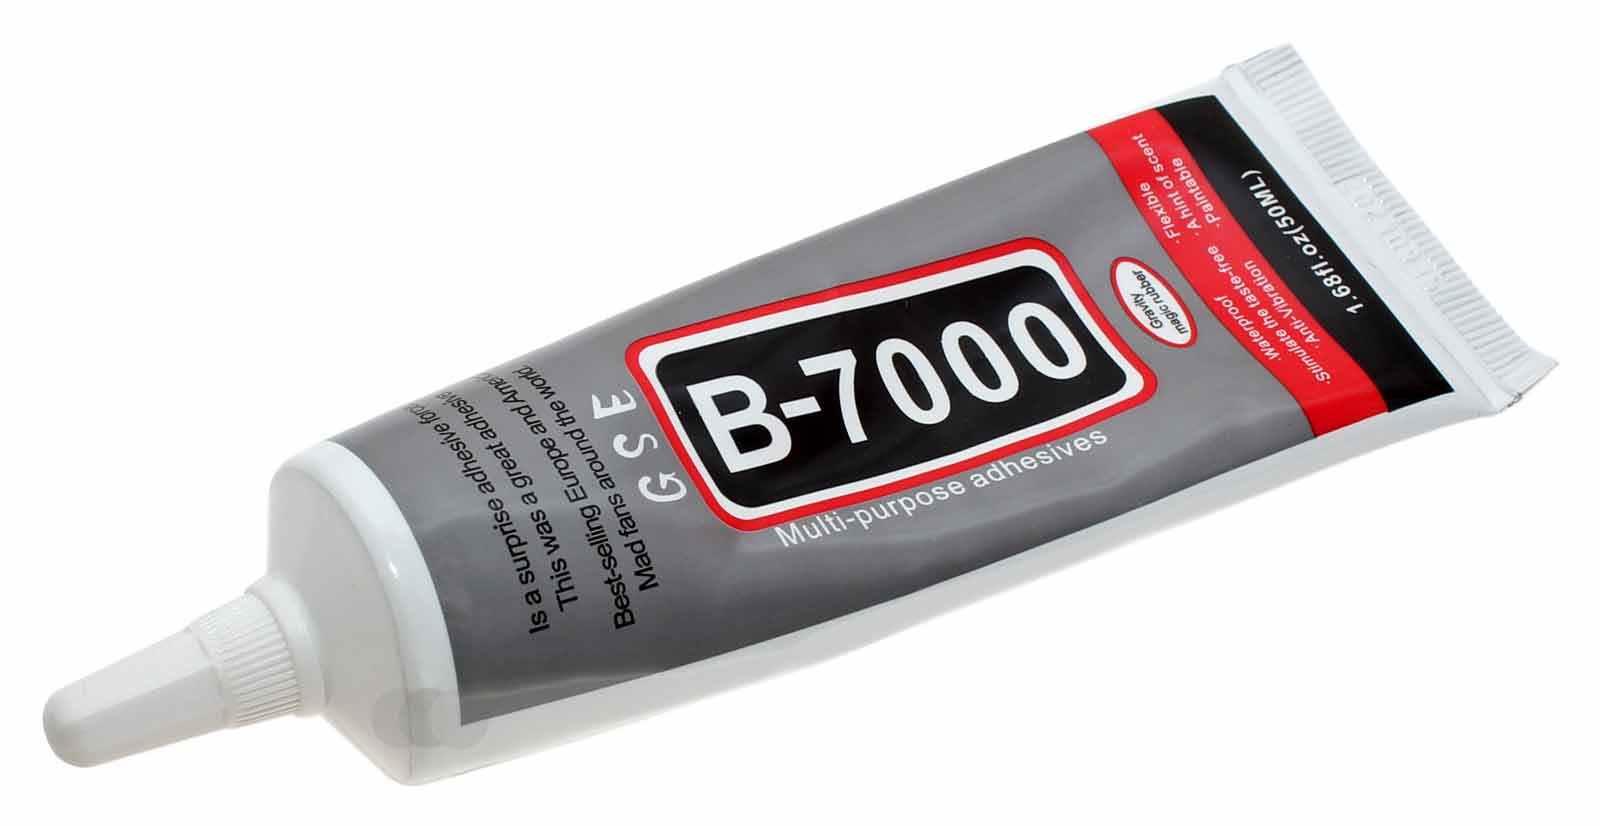 Reparatur Klebstoff B-7000 in 50ml Tube mit Präzisions Dosier Spitze